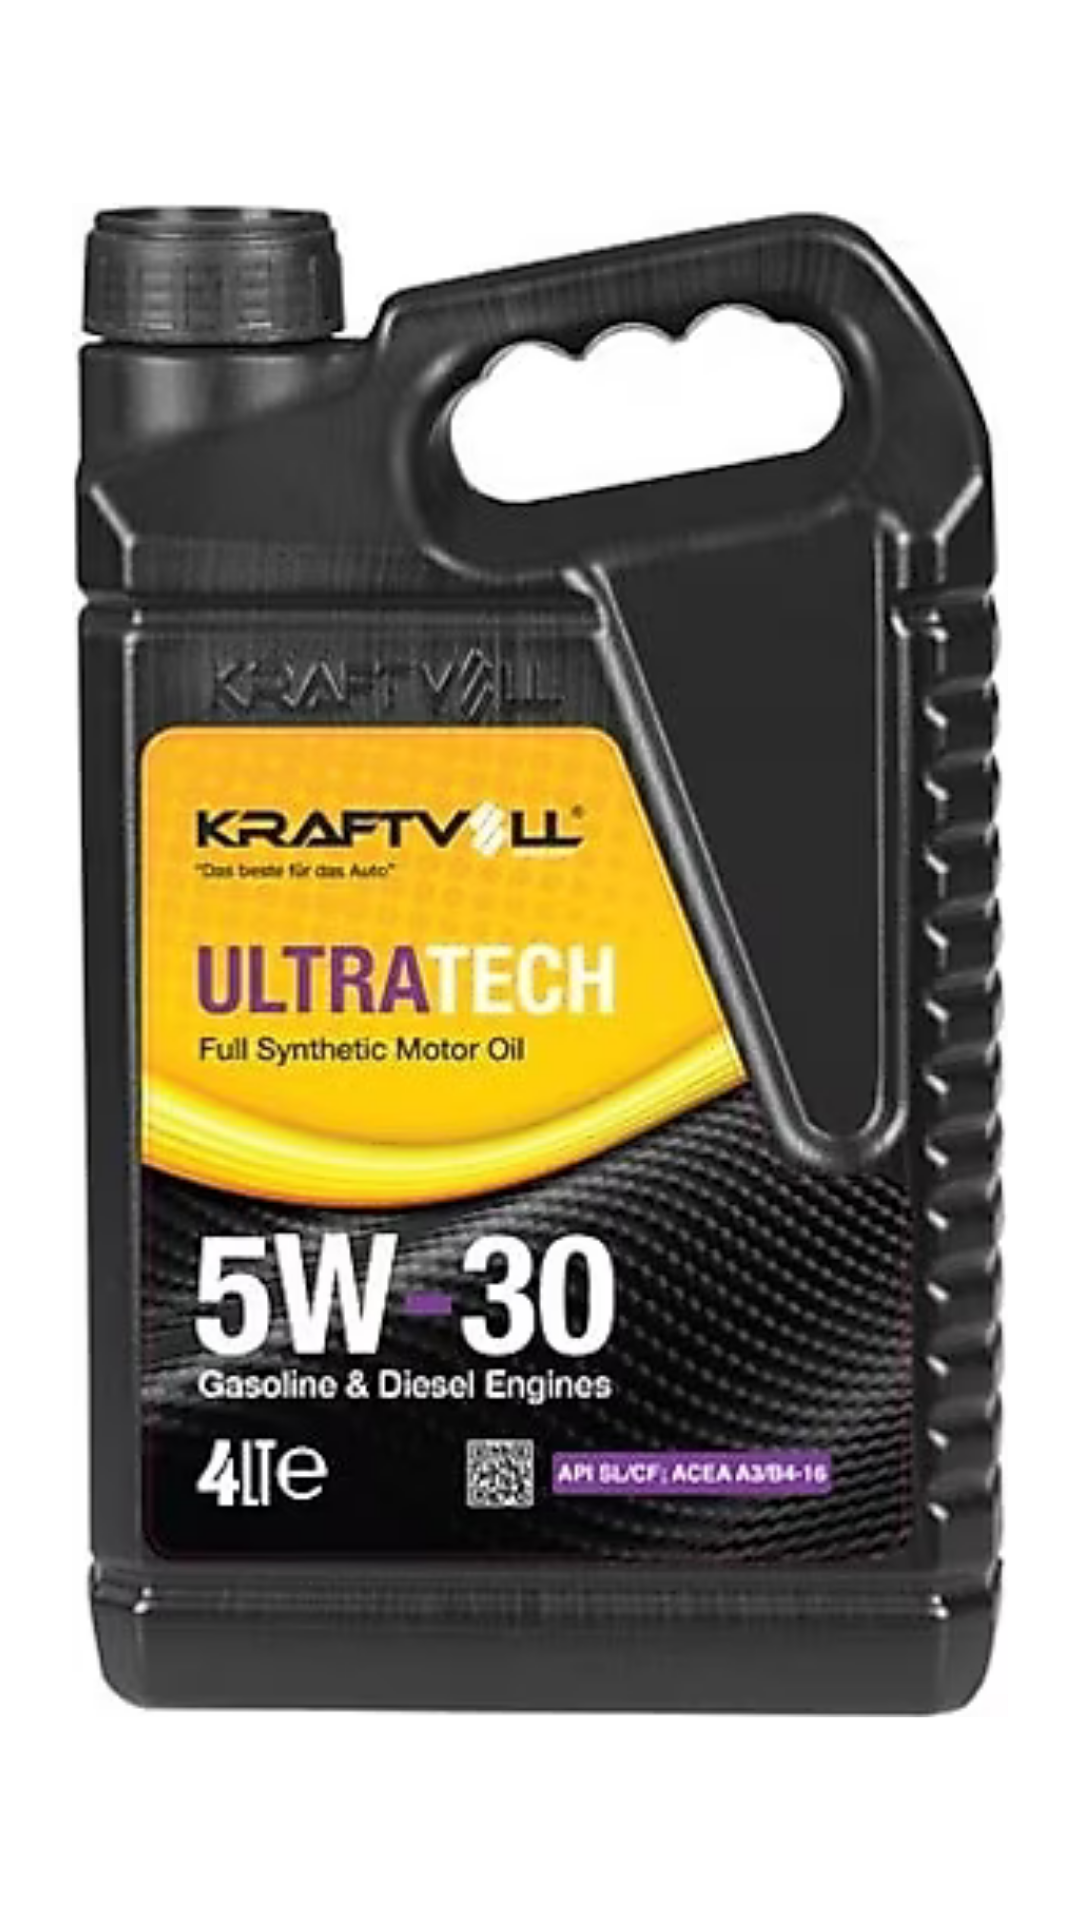 KRAFTVOLL Ultratech 5w30 4Lt